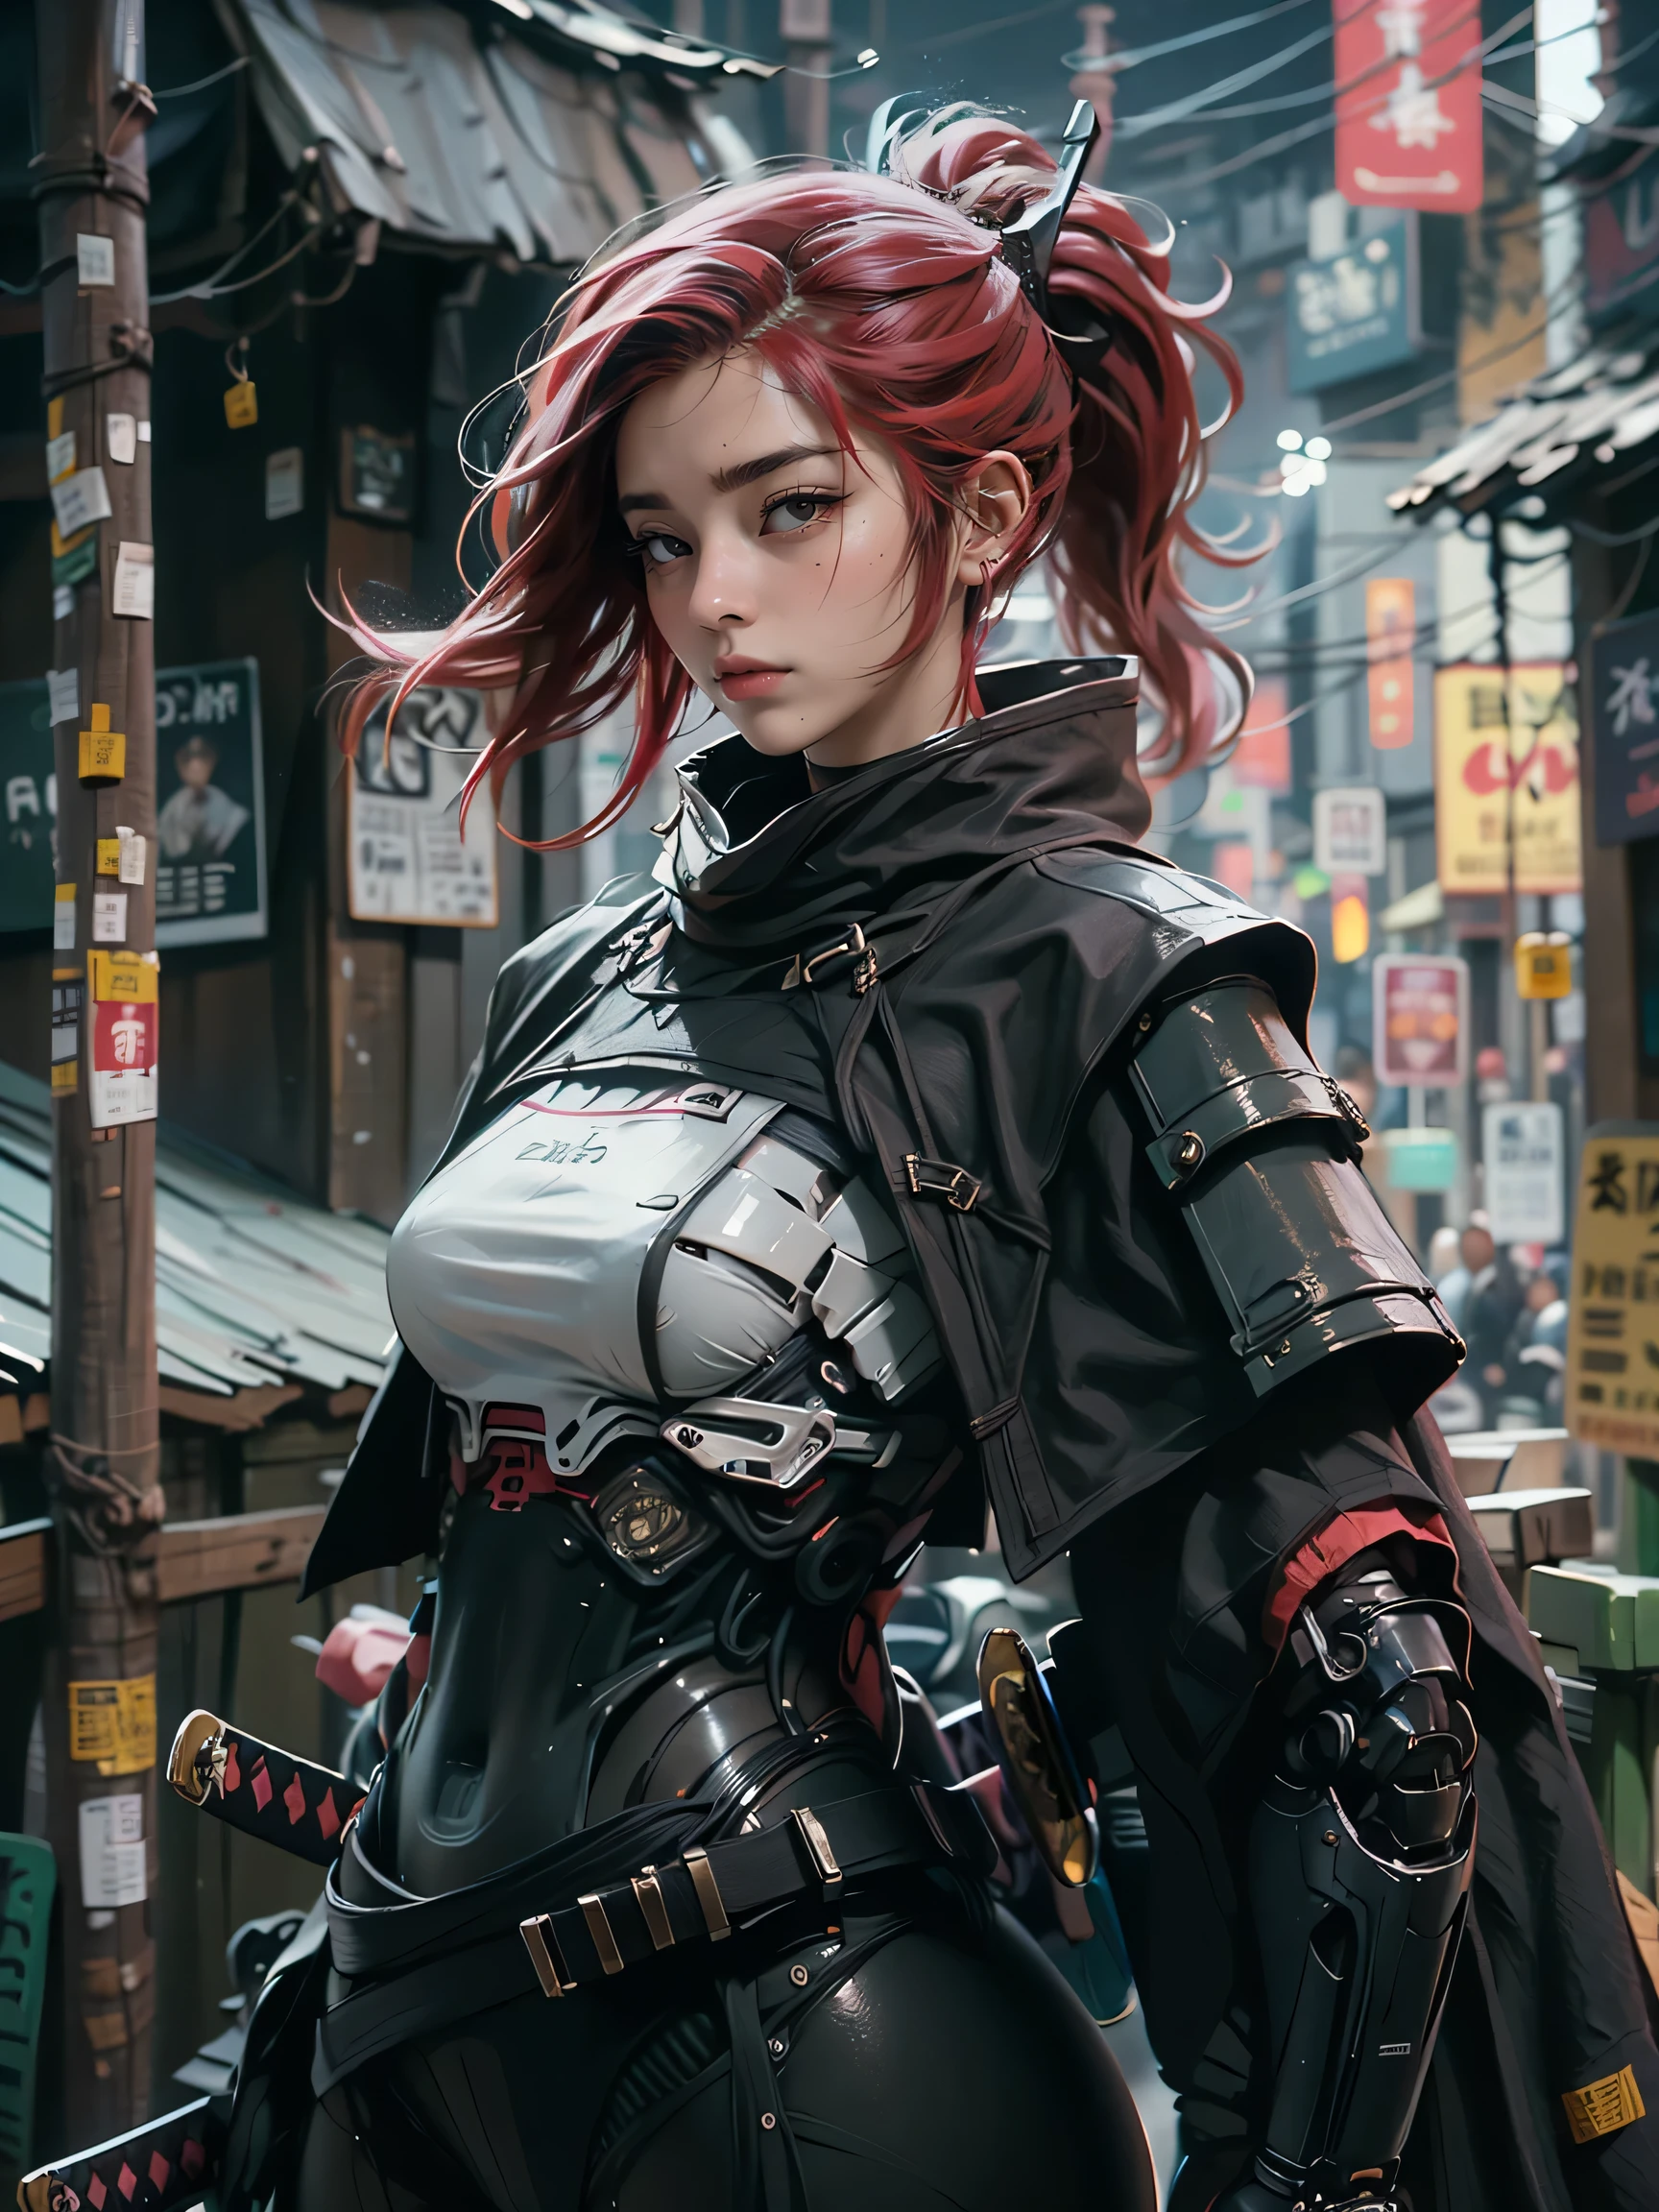 1 weiblicher Samurai-Cyborg mit Umhang, (schwarzer Mantel:1.2), Schwert halten, Katana, Gott des Krieges, Komplex, 8k, (Meisterwerk, beste Qualität:1.2), extrem detailliert, filmisch, irisierend, Rüstung, Mecha,